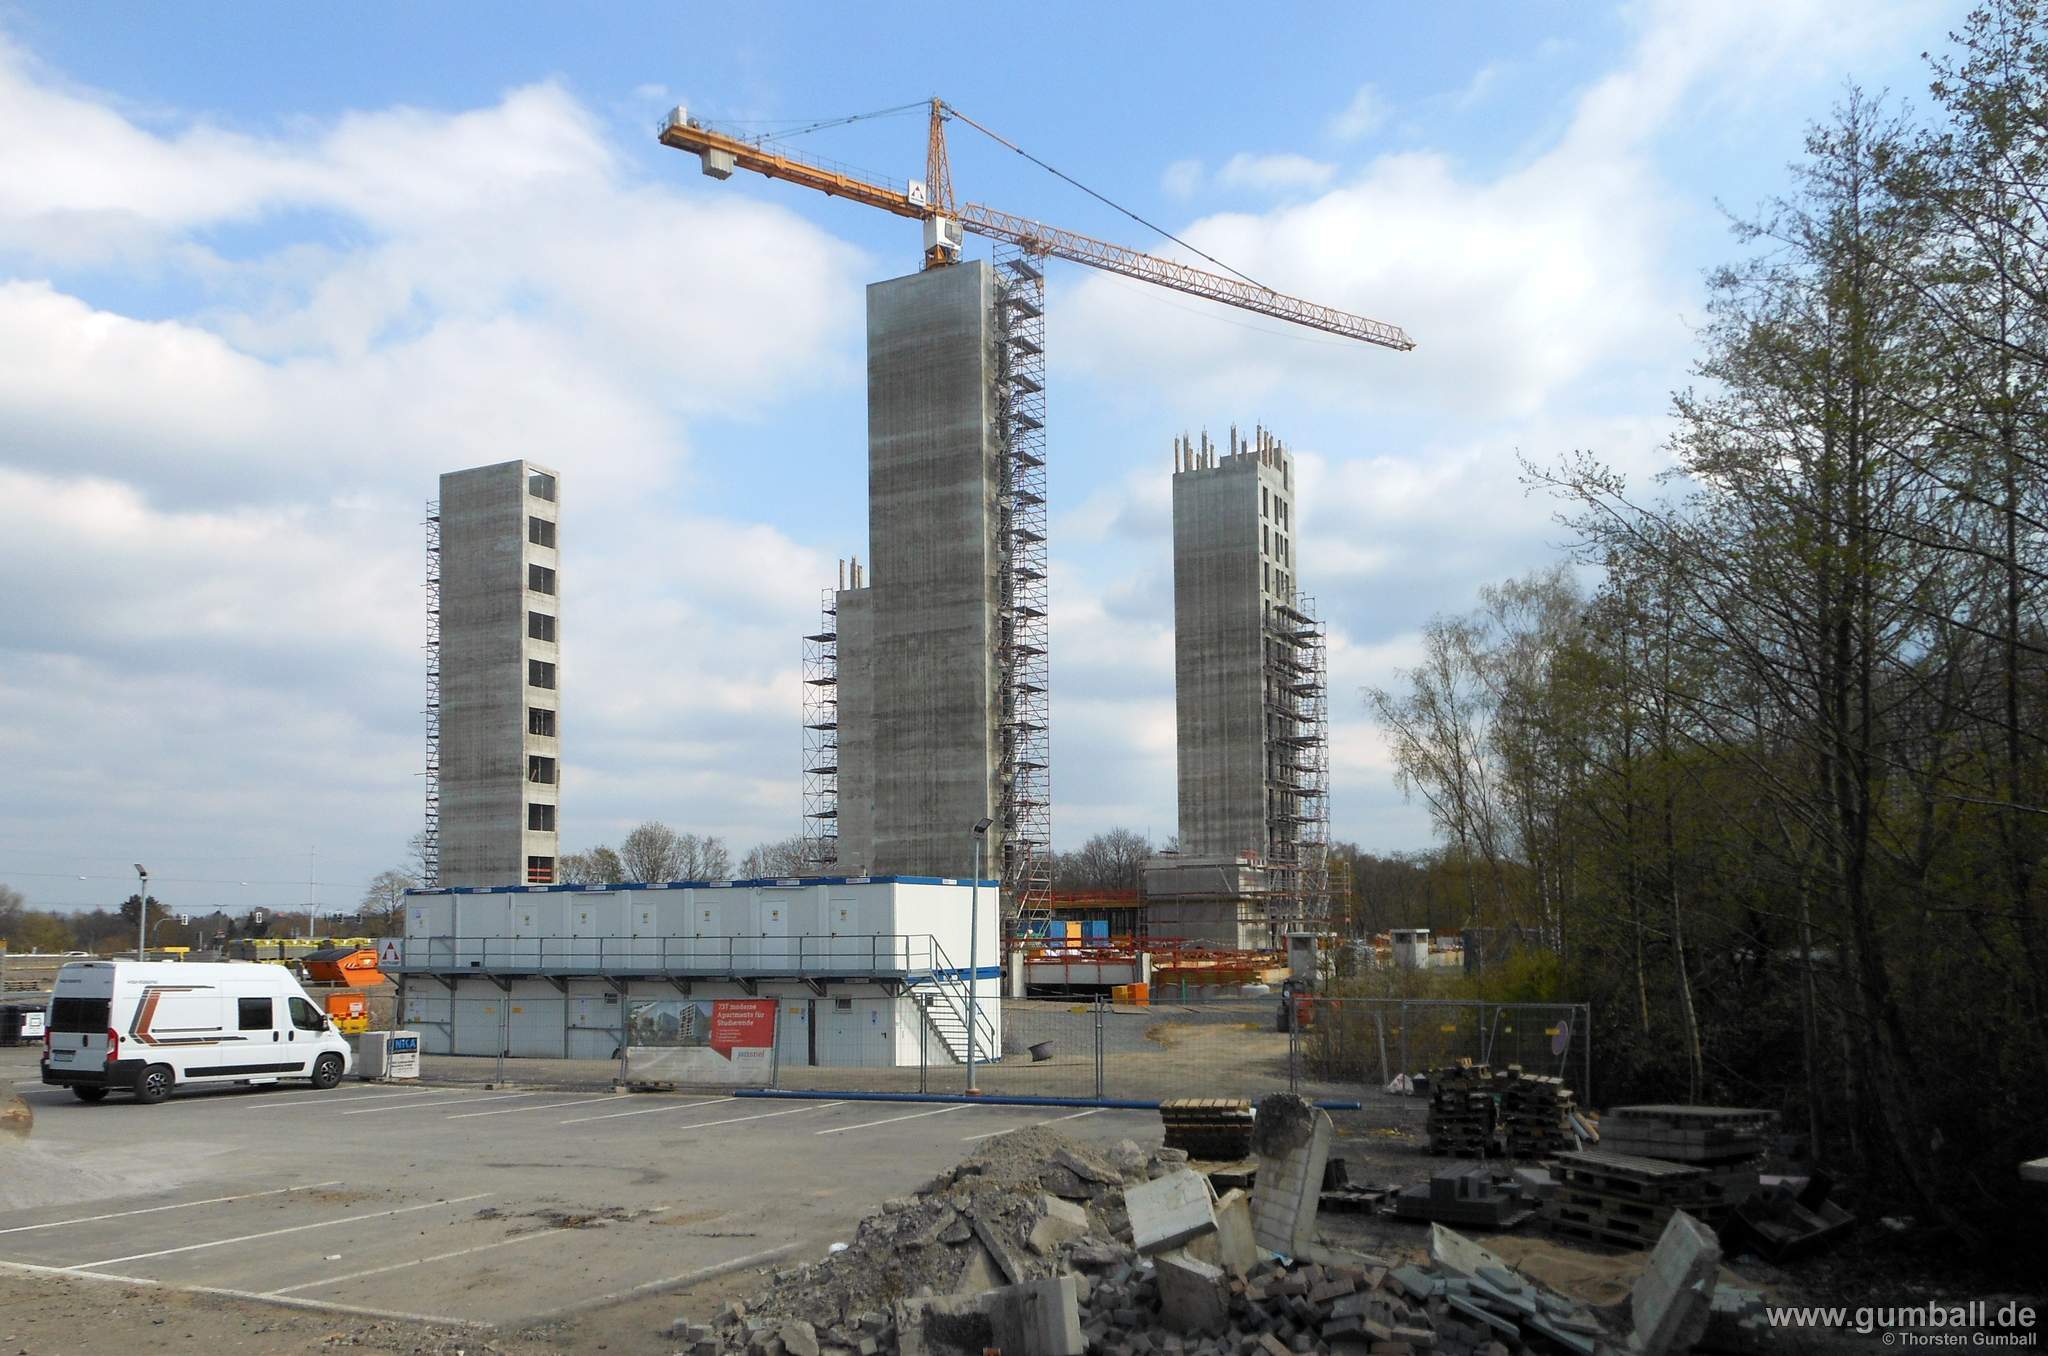 Seven Stones Baustelle, Bochum - April 2021 (1)